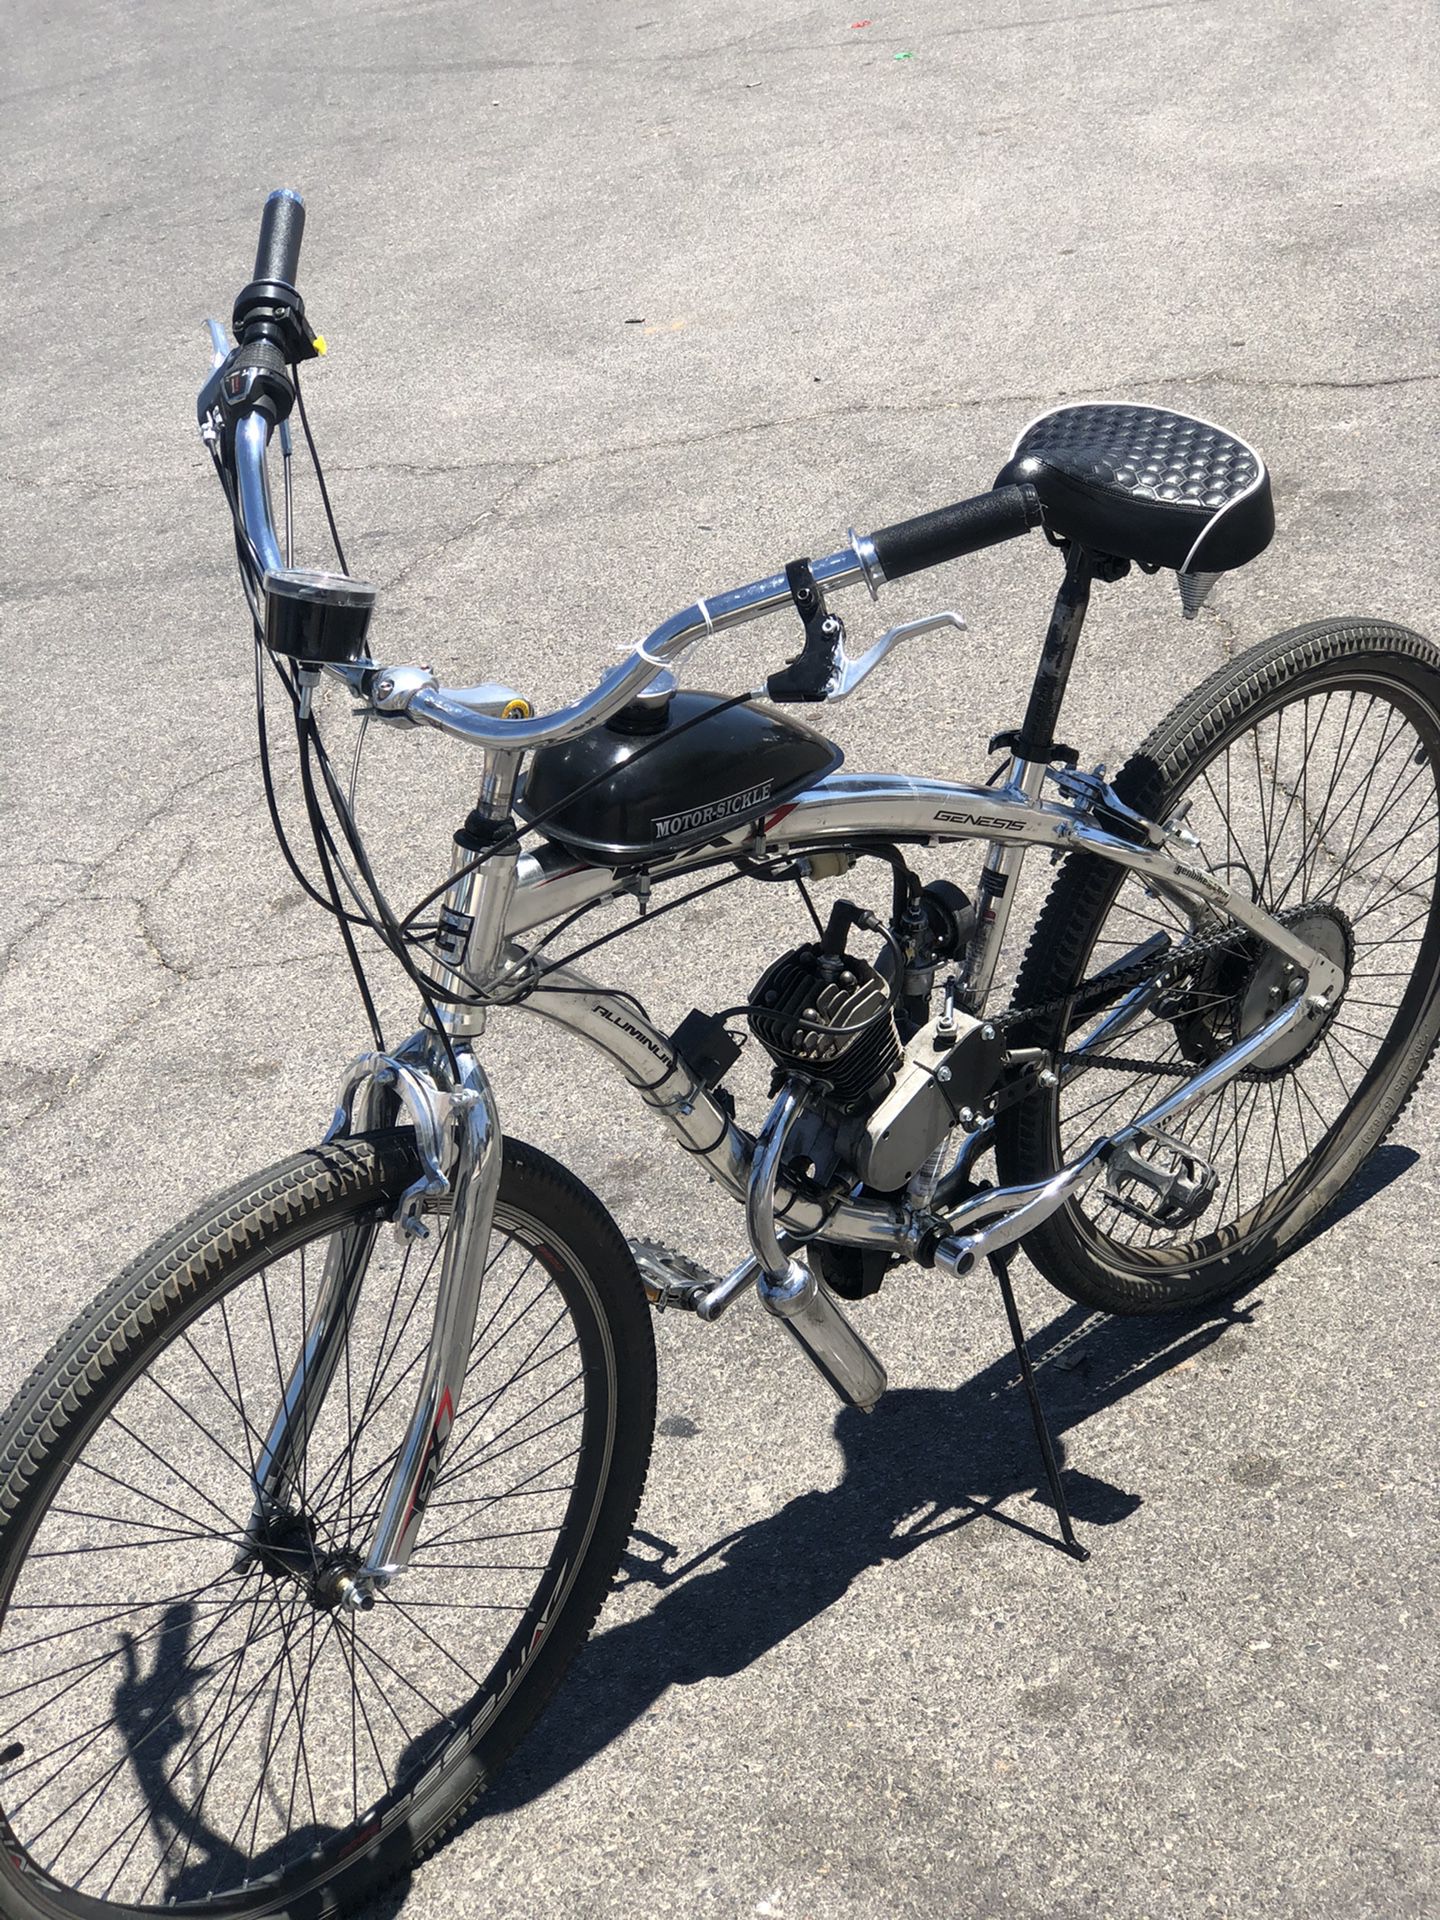 Genesis motor sickle bike